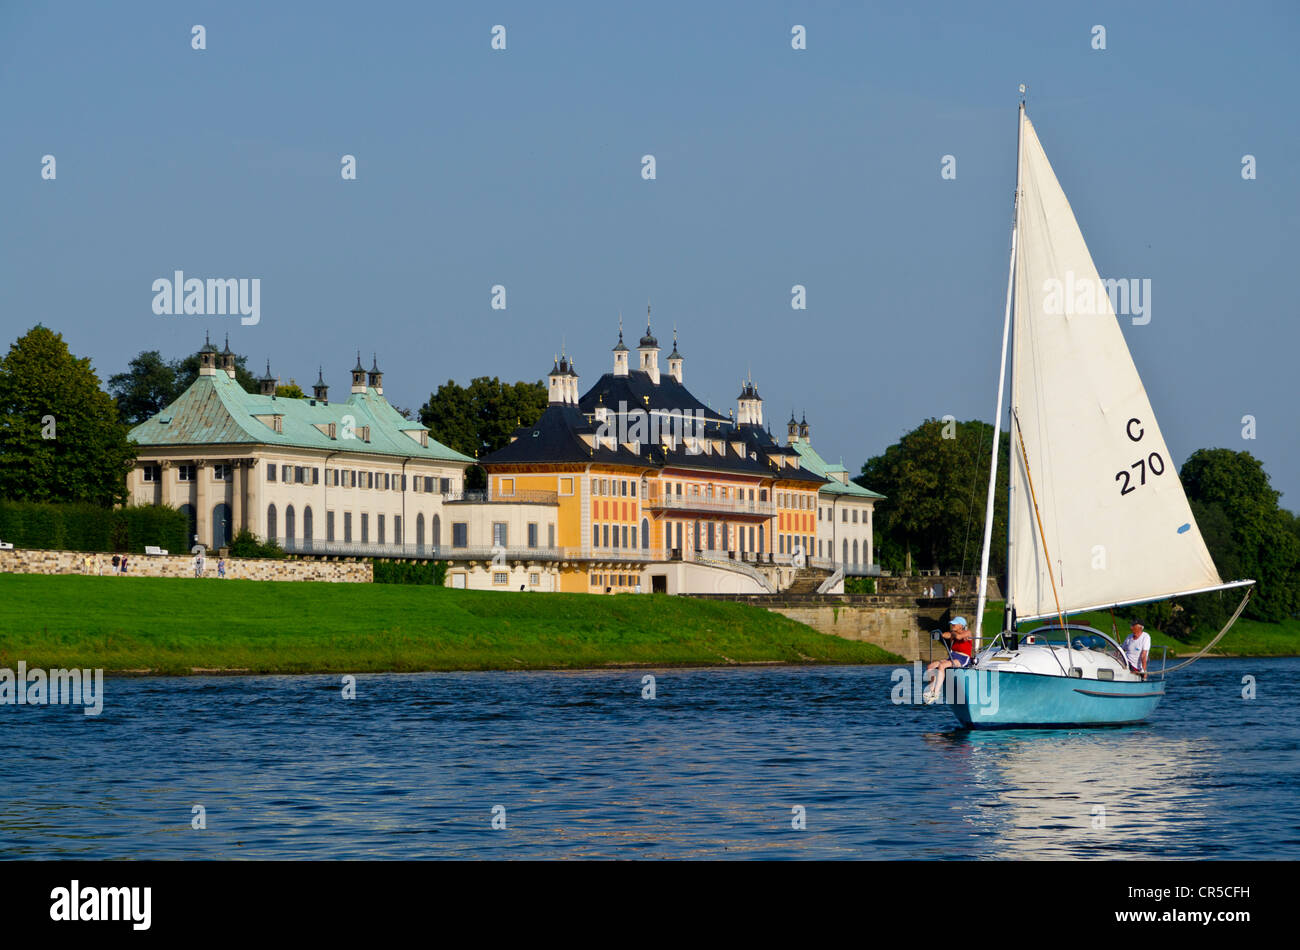 Ein Segelboot vor dem Schloss Pillnitz Schloss, auf dem Fluss Elbe, Dresden, Sachsen, Deutschland, Europa Stockfoto